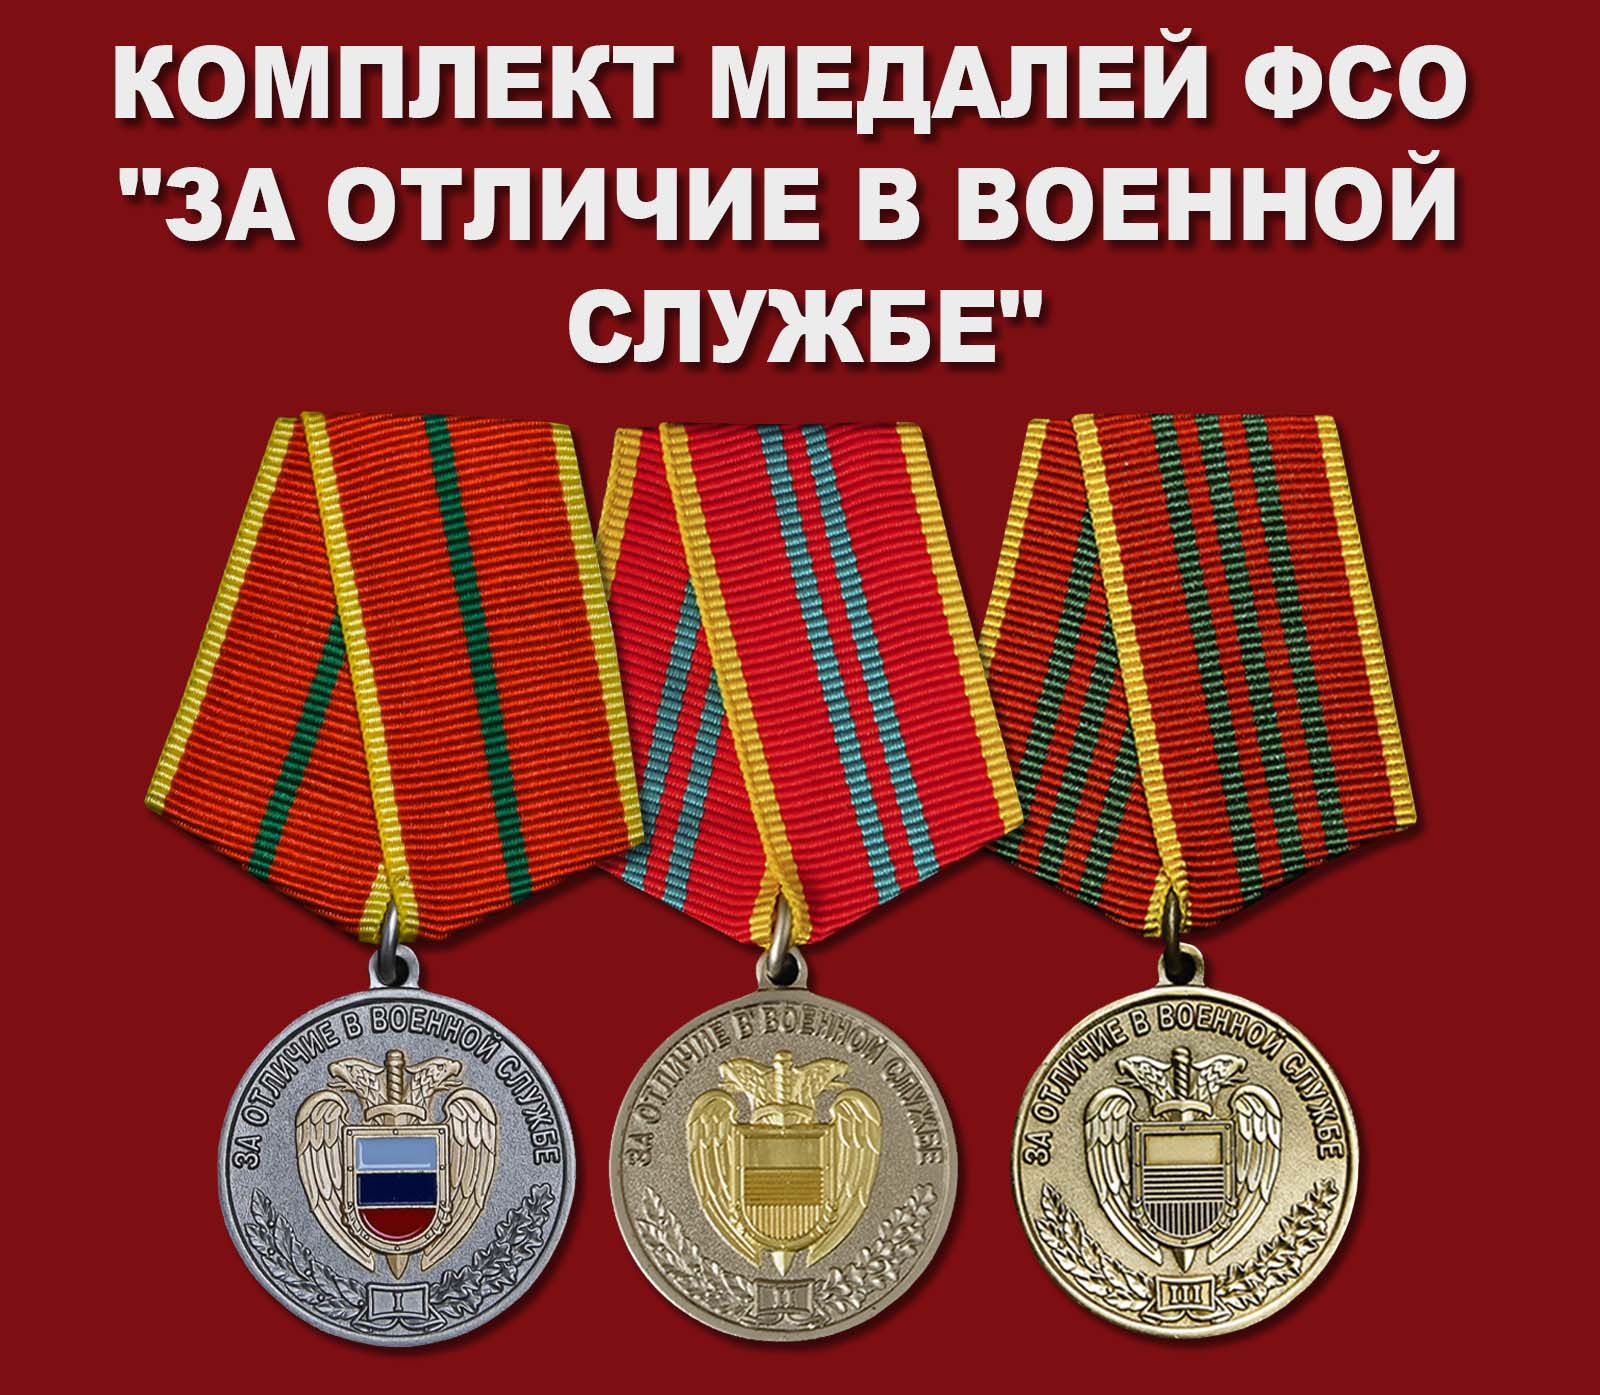 Купить комплект медалей ФСО "За отличие в военной службе"